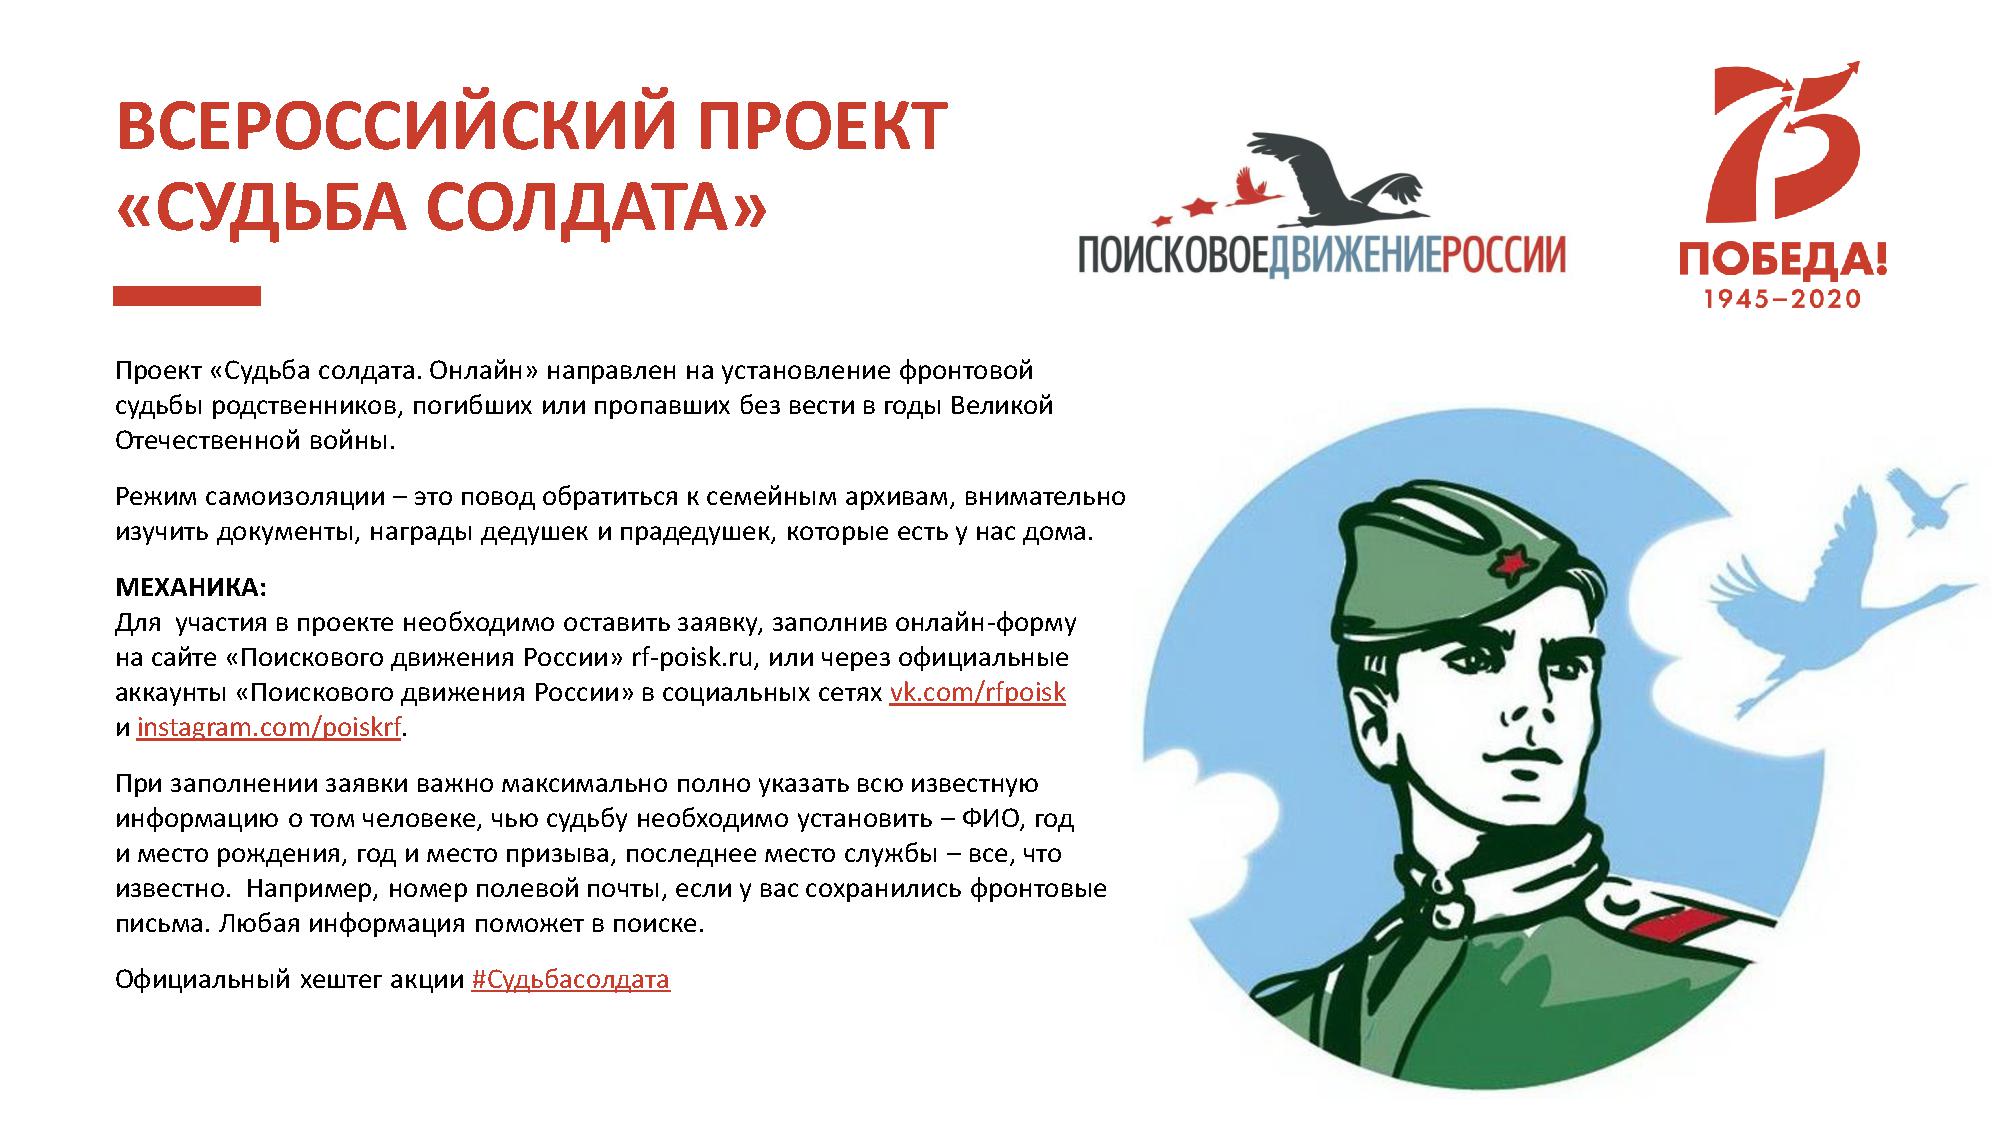 Презентация. Всероссийский проект "Судьба солдата".